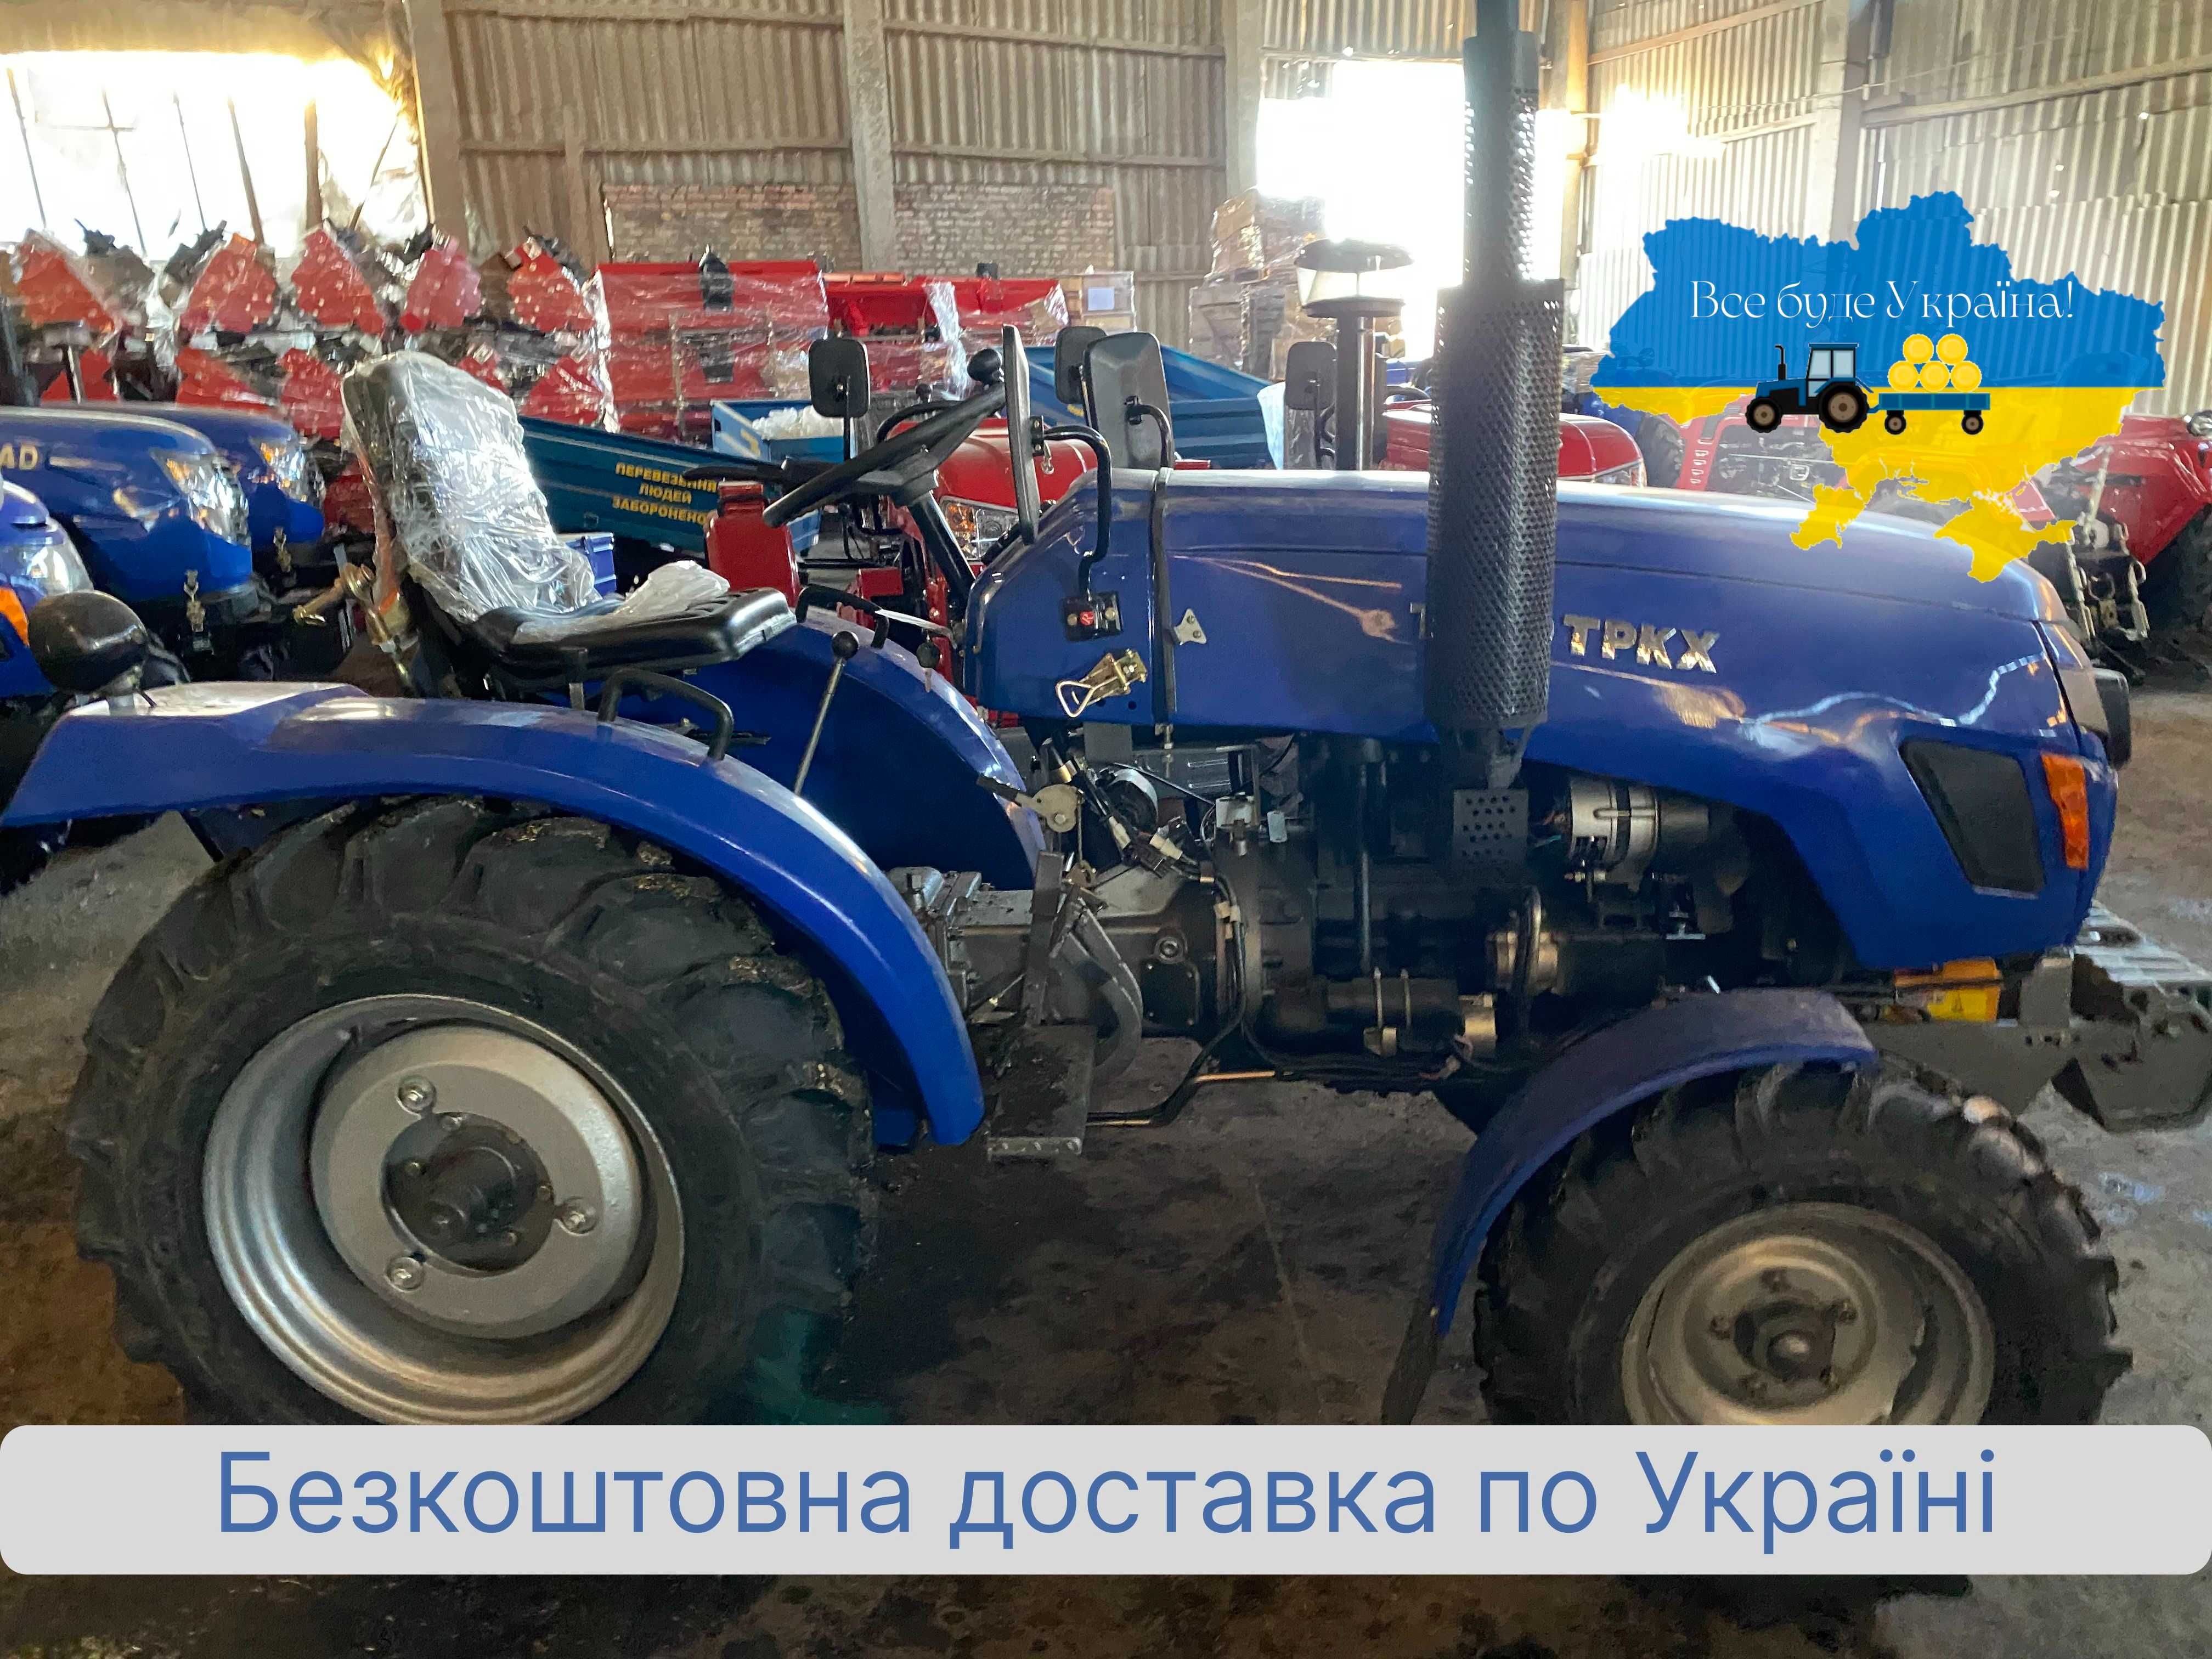 Трактор Синтай XT 240 TPKX , доставка БЕСПЛАТНАЯ, МАСЛА, Гарантия 2г